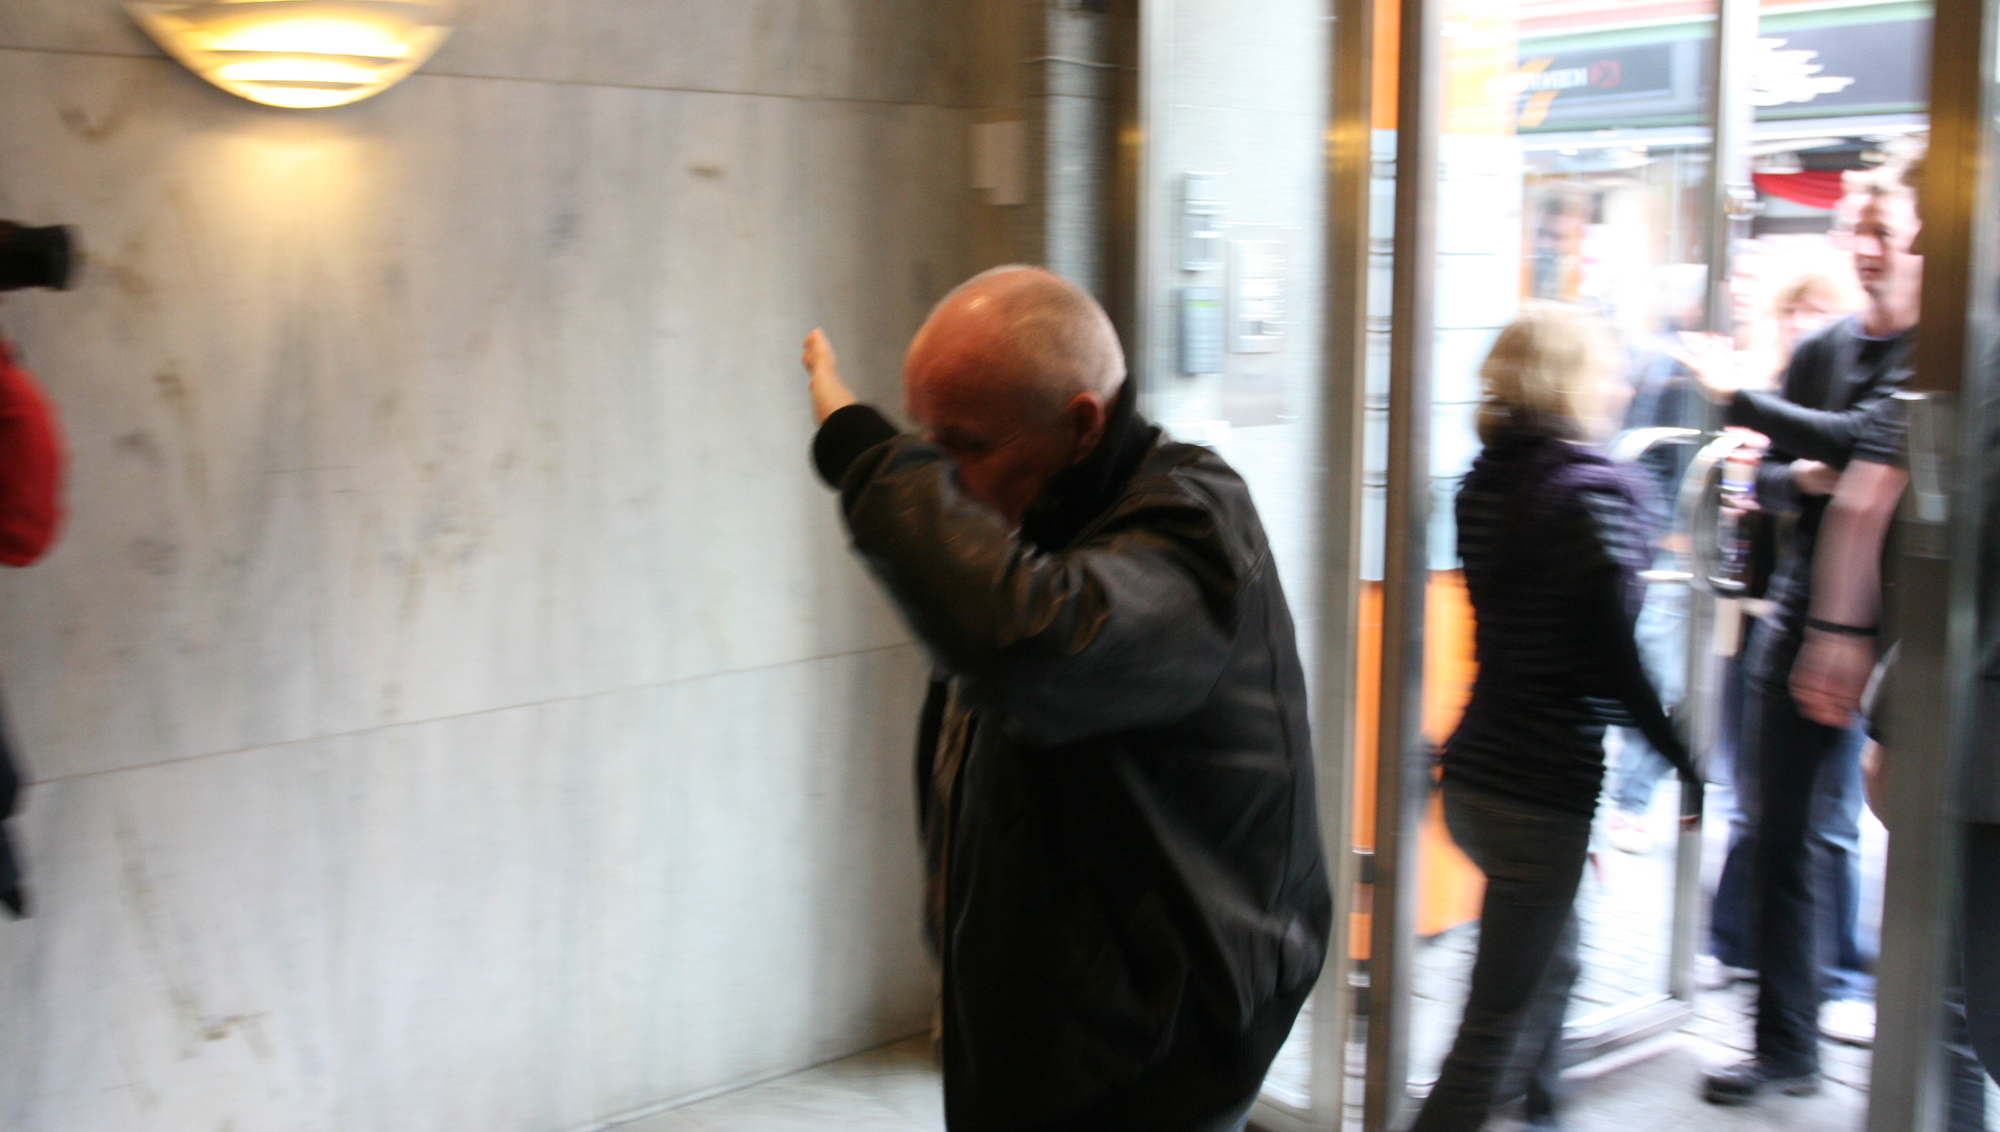 En av de Fast-ansatte skjuler ansiktet i det han går inn i kontorene rett etter at politiet har forlatt bygningen. (Foto: Marius Jørgenrud, Digi.no)